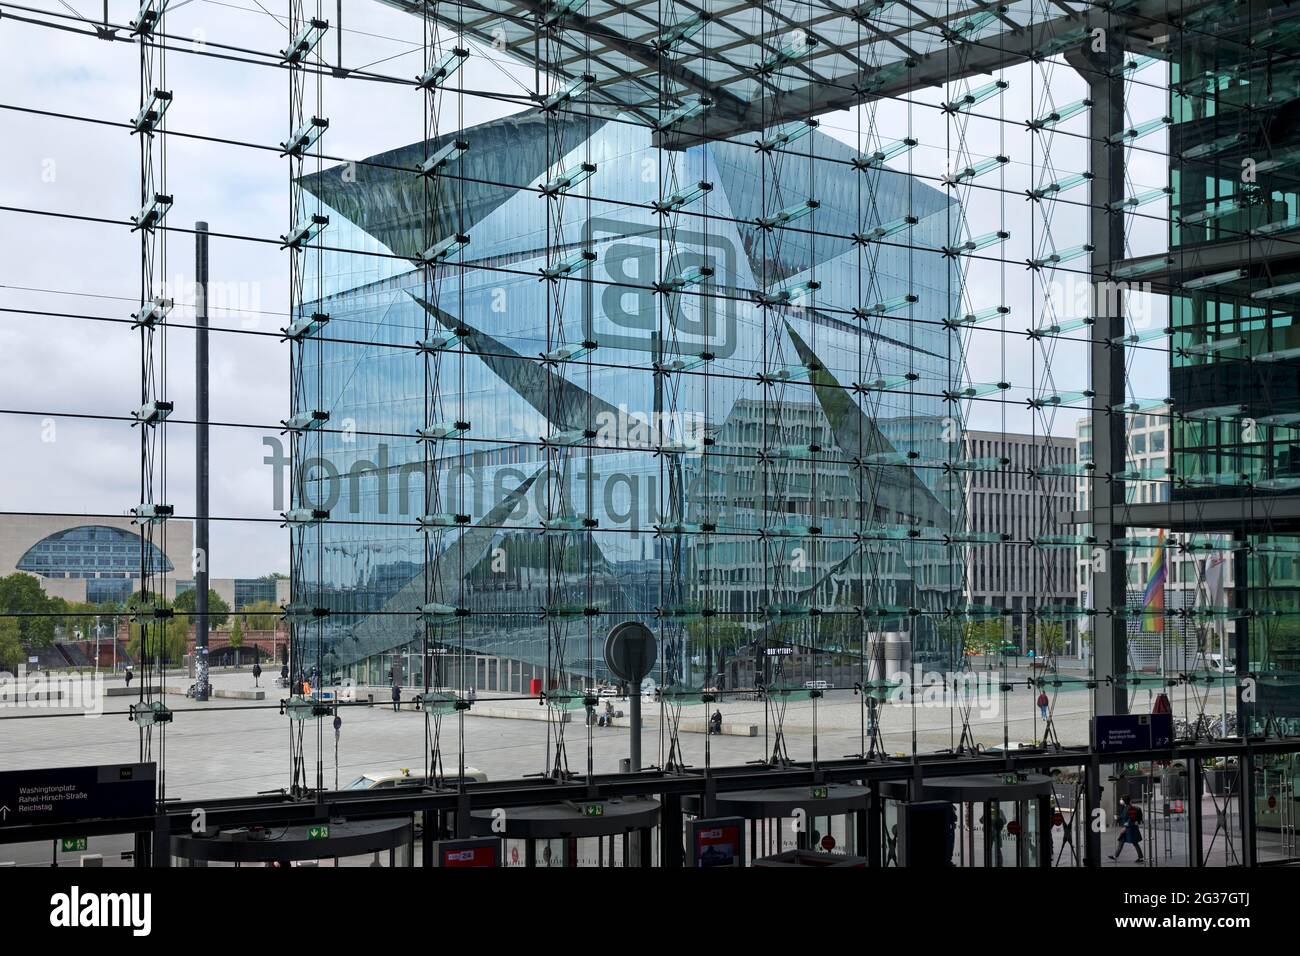 Cubo Berlino visto attraverso la facciata in vetro della stazione principale, progettato dallo studio di architettura 3XN, Washingtonplatz, Berlino, Germania Foto Stock